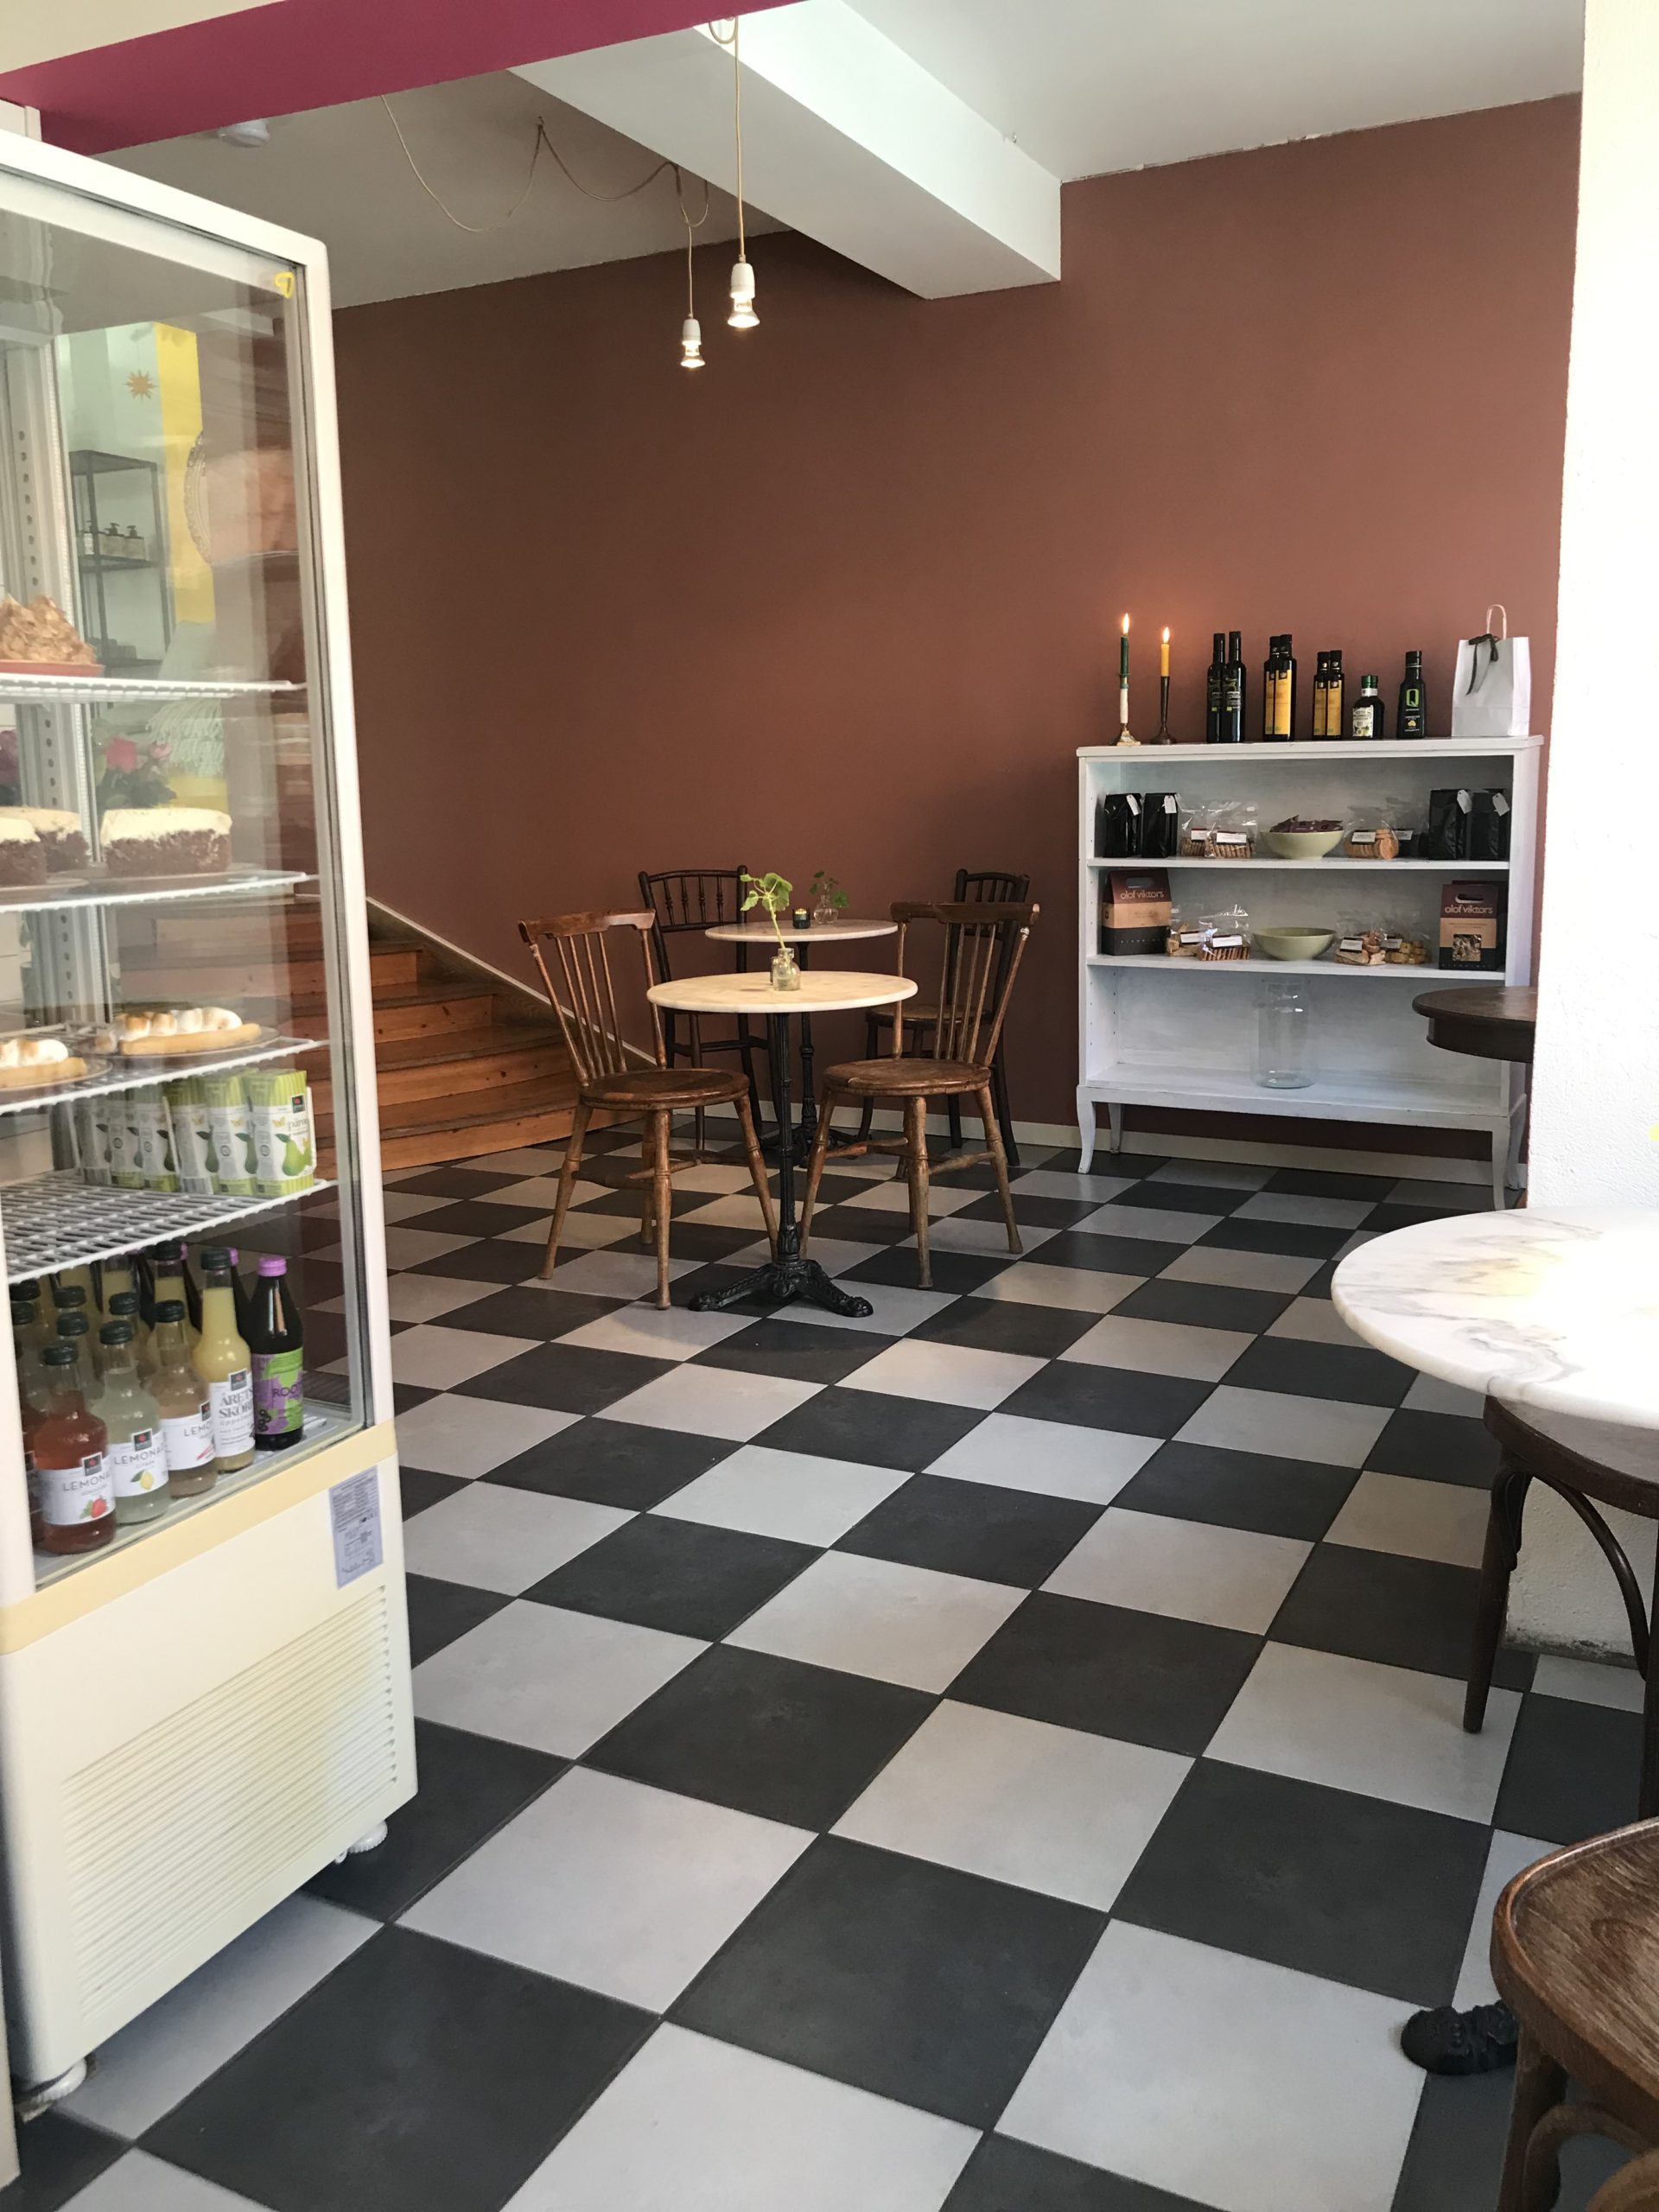 Interiör cafè Runt Hörnet i Simrishamn Invändigt måleri - referens måleriföretaget Gårdbolaget på Österlen